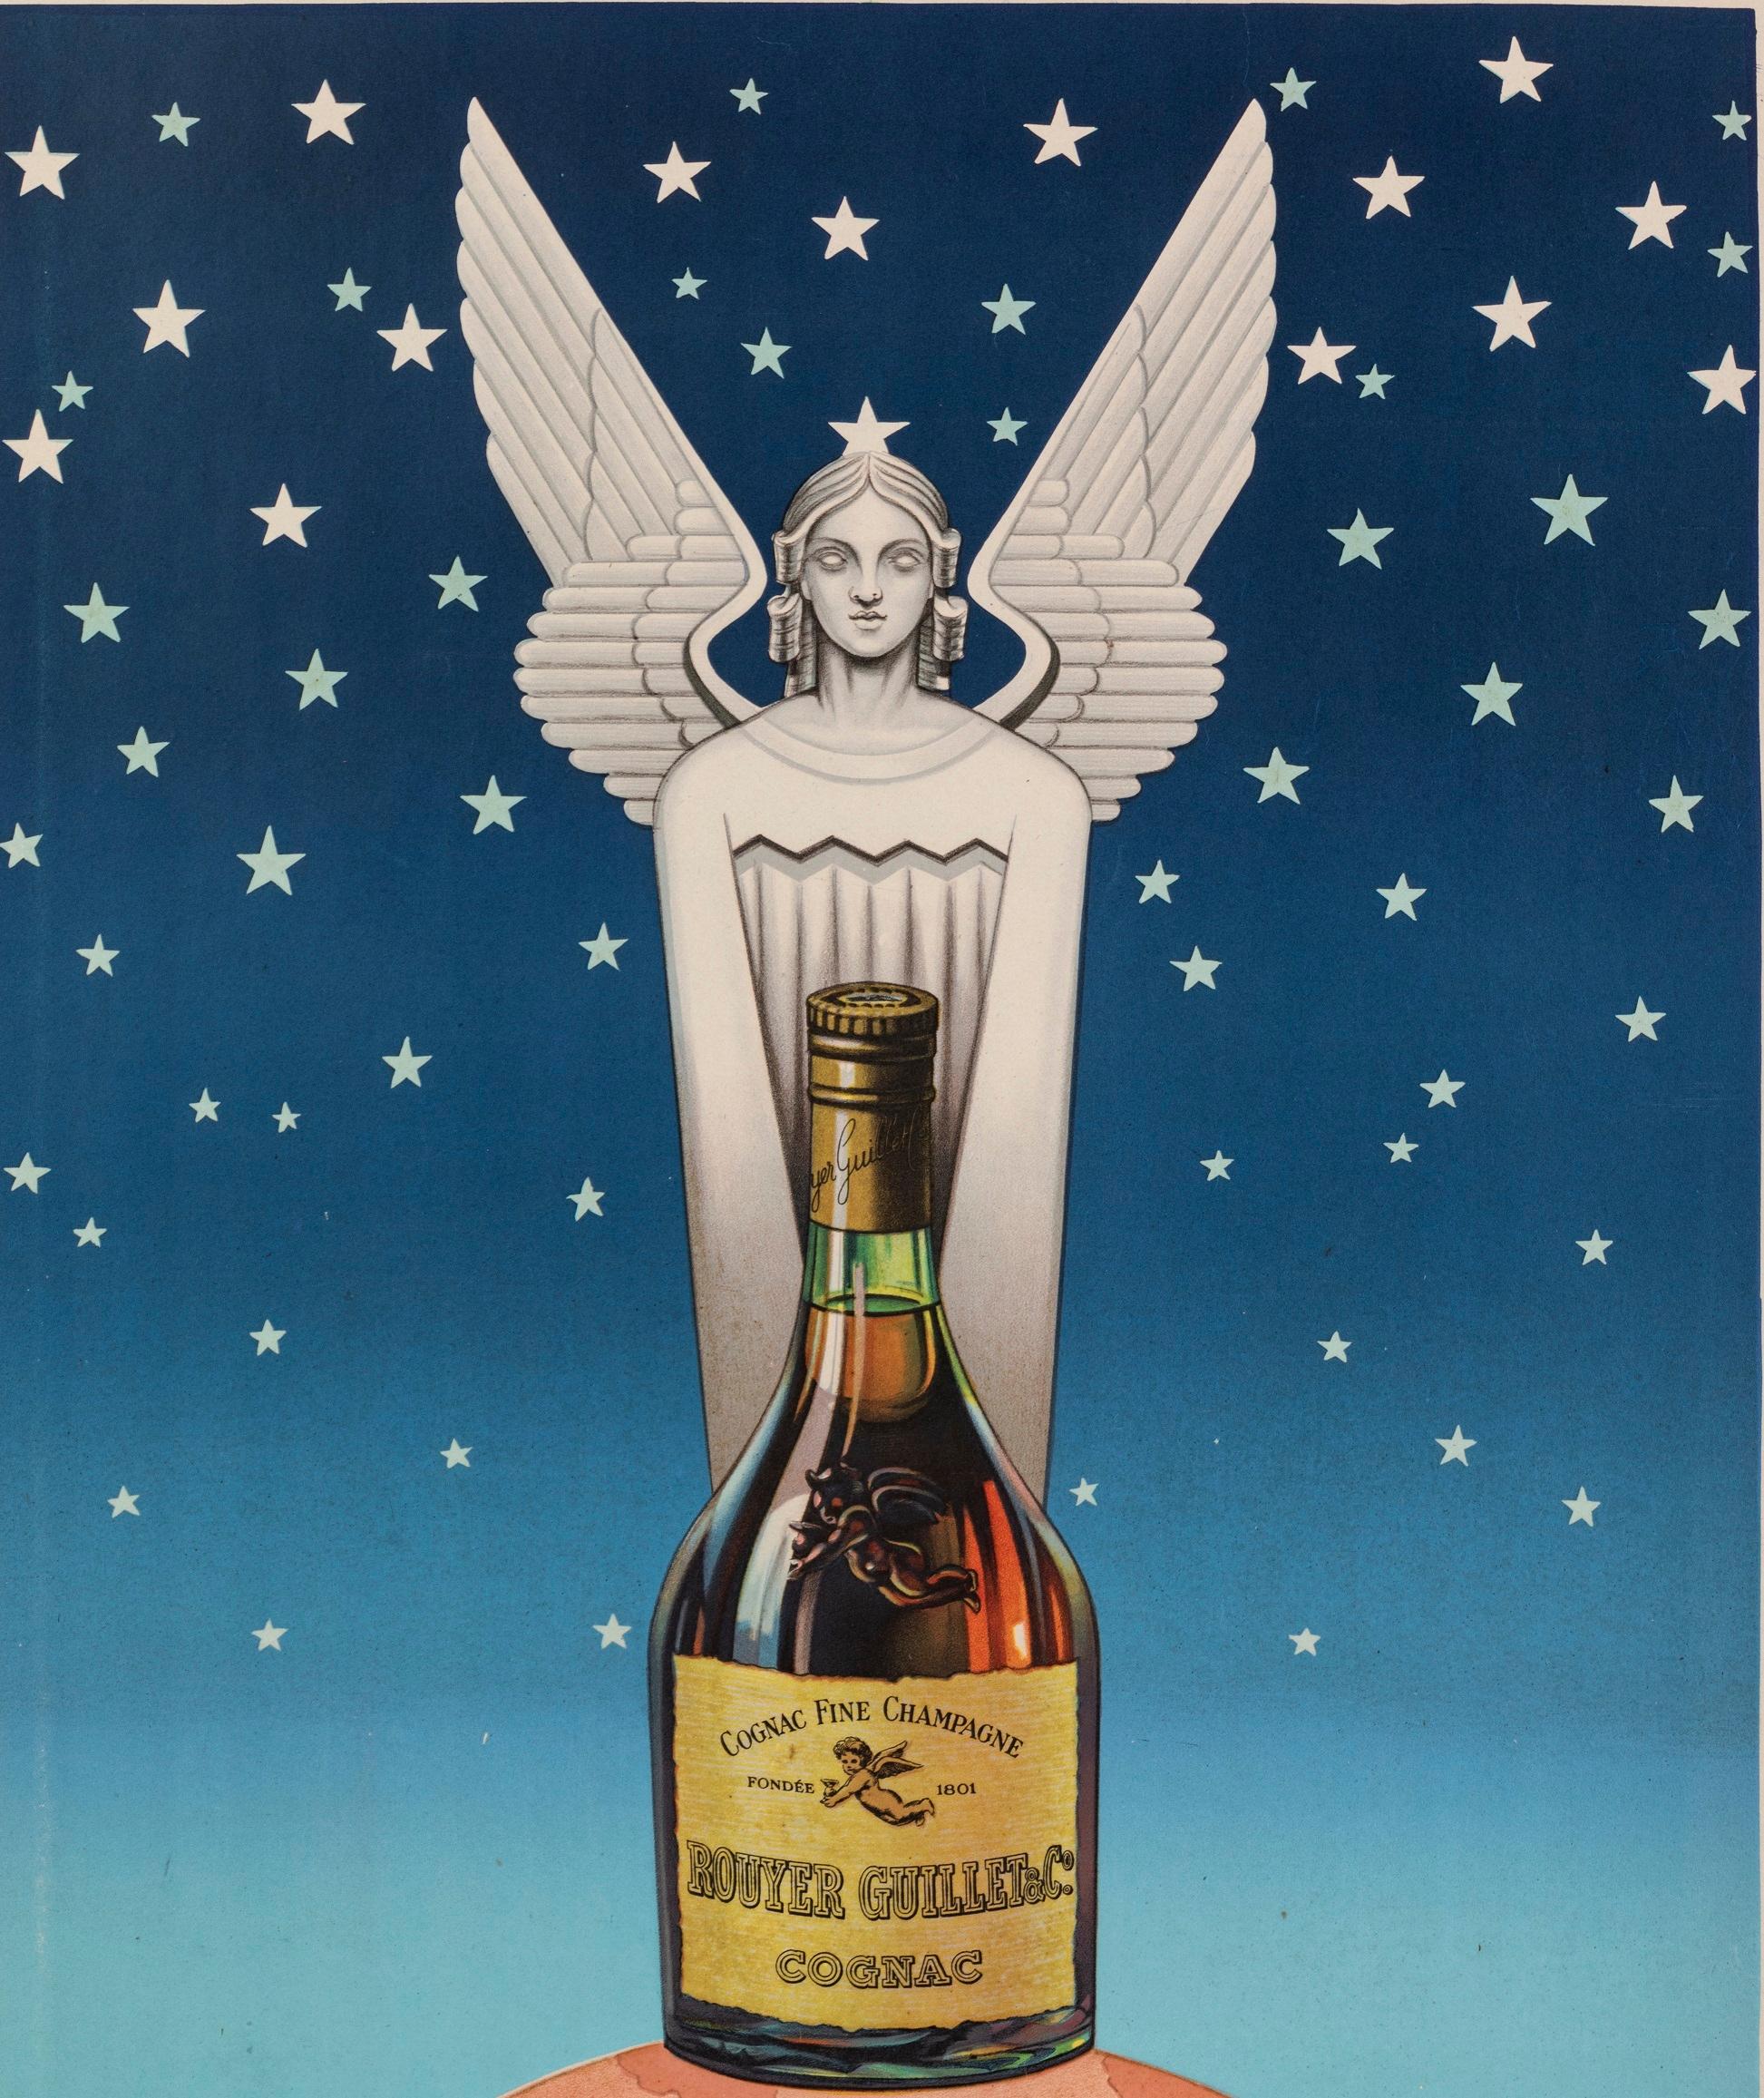 Original Vintage poster created by Pub TH for Cognac Rouyer in 1945.

Artist: Pub TH
Title: Cognac Rouyer
Date: 1945
Size: 31.3 x 46.9 in / 79.5 x 119 cm
Printer: Union Parisienne de Publicité – 52 Chaussée d’Antin - Paris
Materials and Techniques: